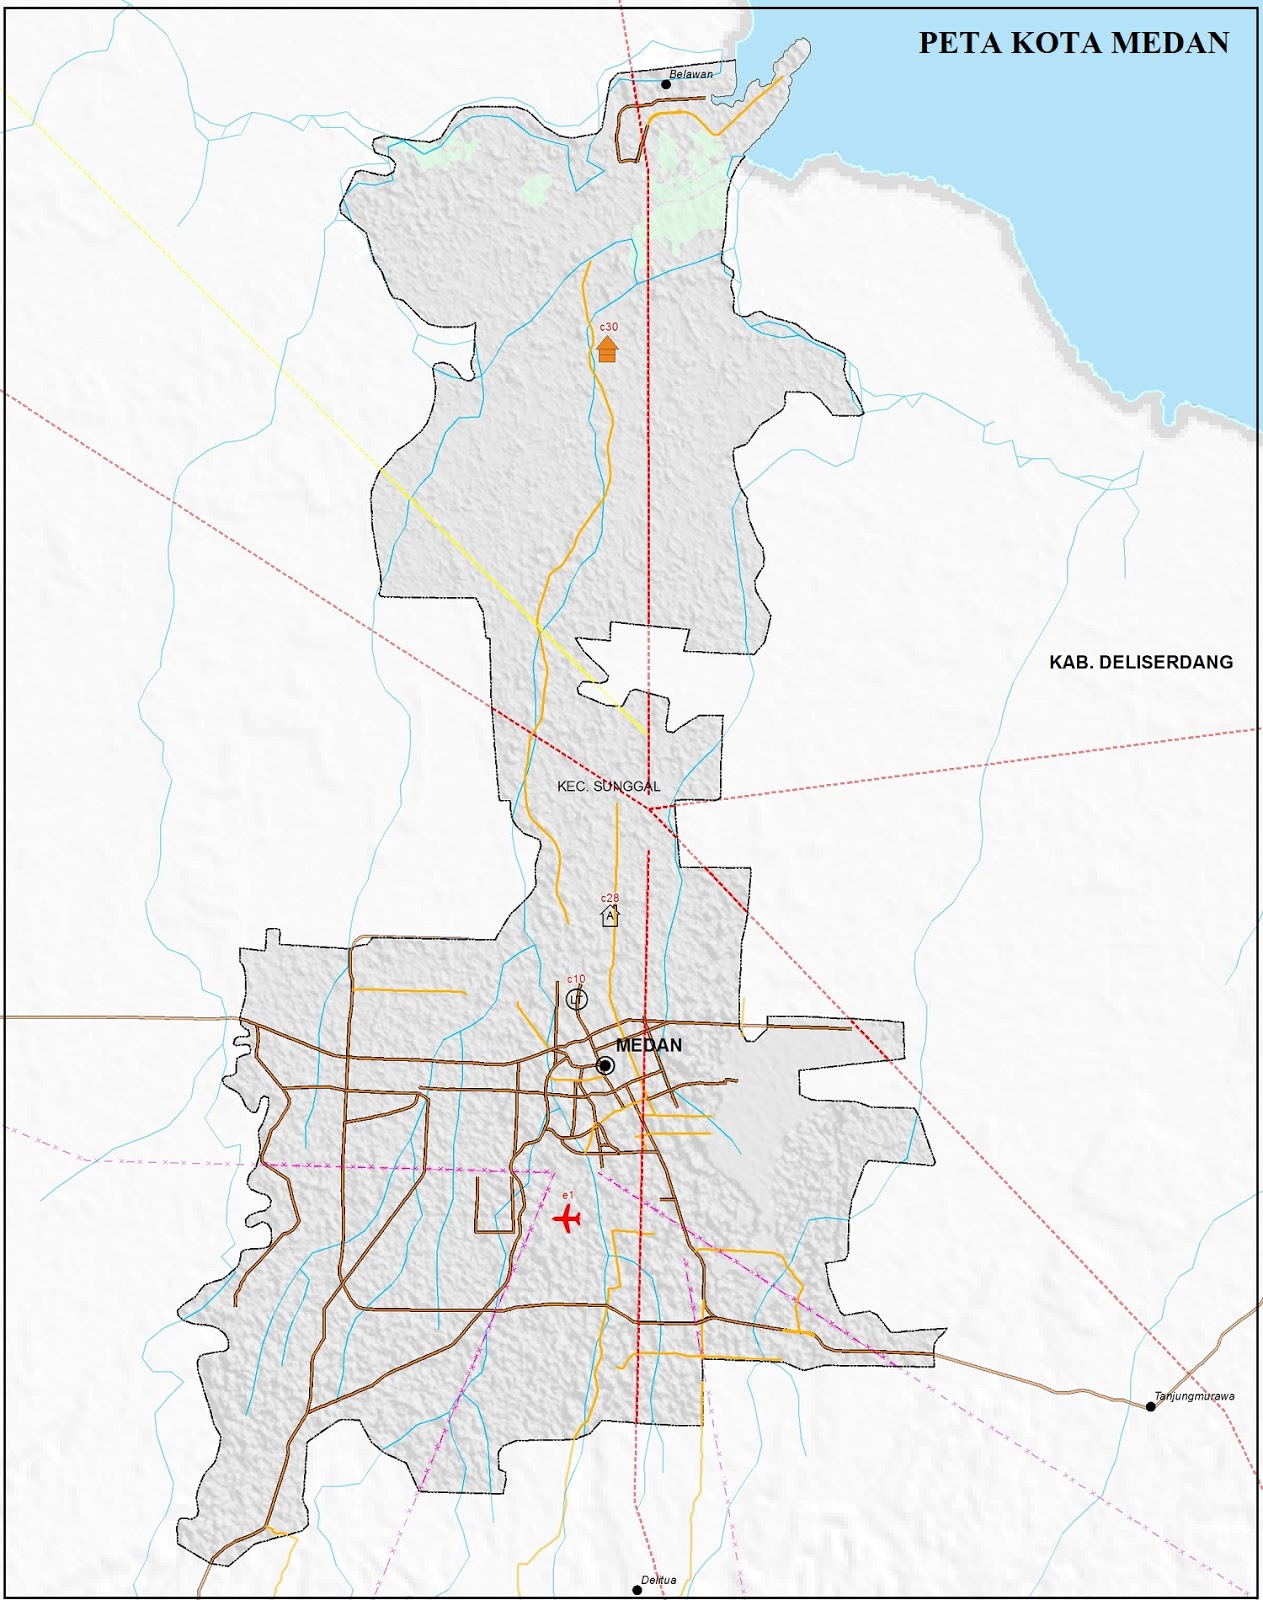  Peta Kota Medan Lengkap  Gambar HD dan Keterangannya PETA  HD